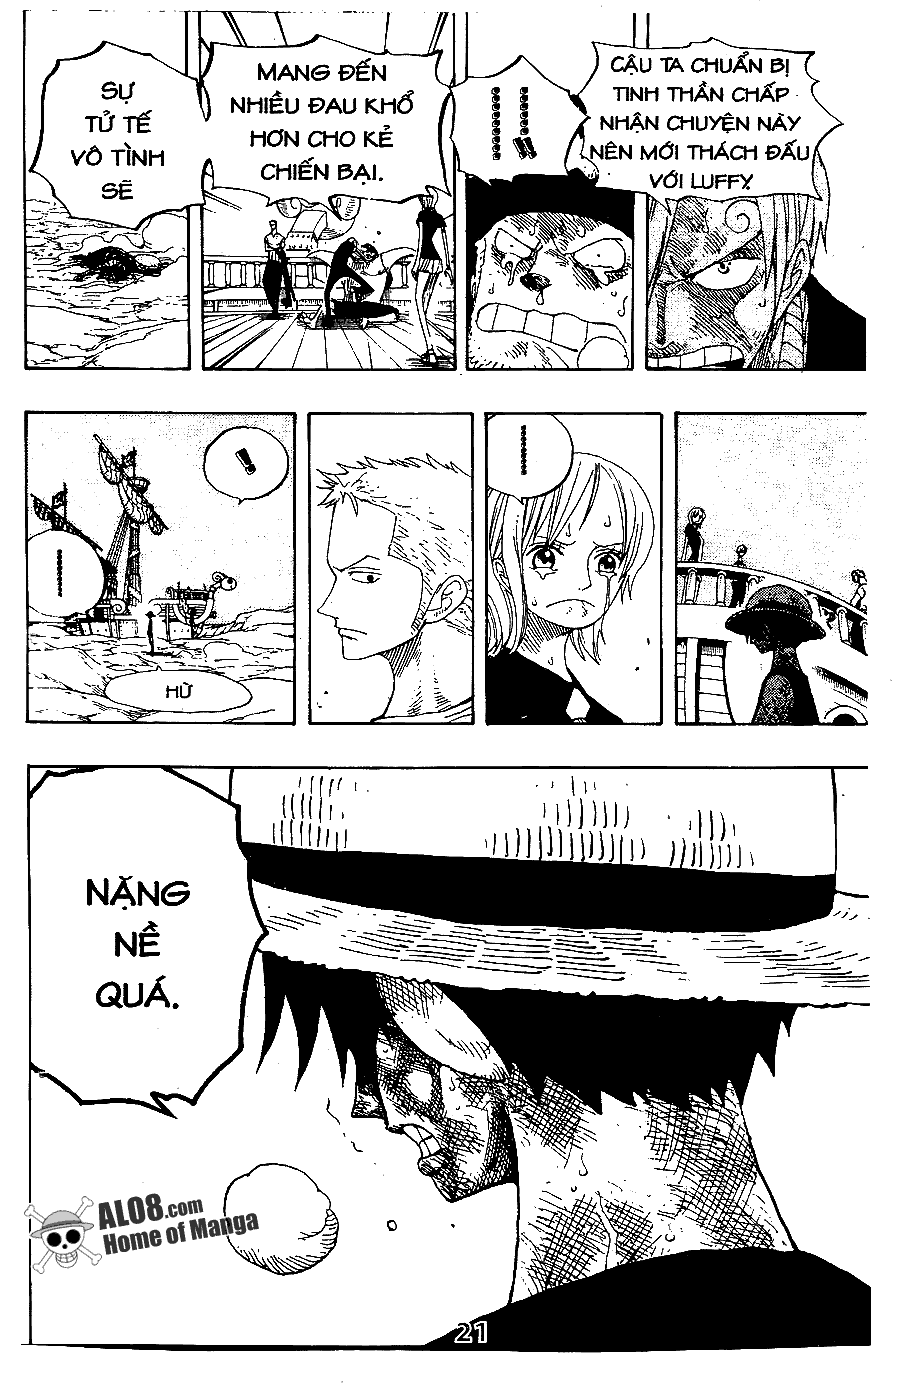 [Event] Gởi gắm tình cảm đến Luffy!! - Page 2 IMG_0019